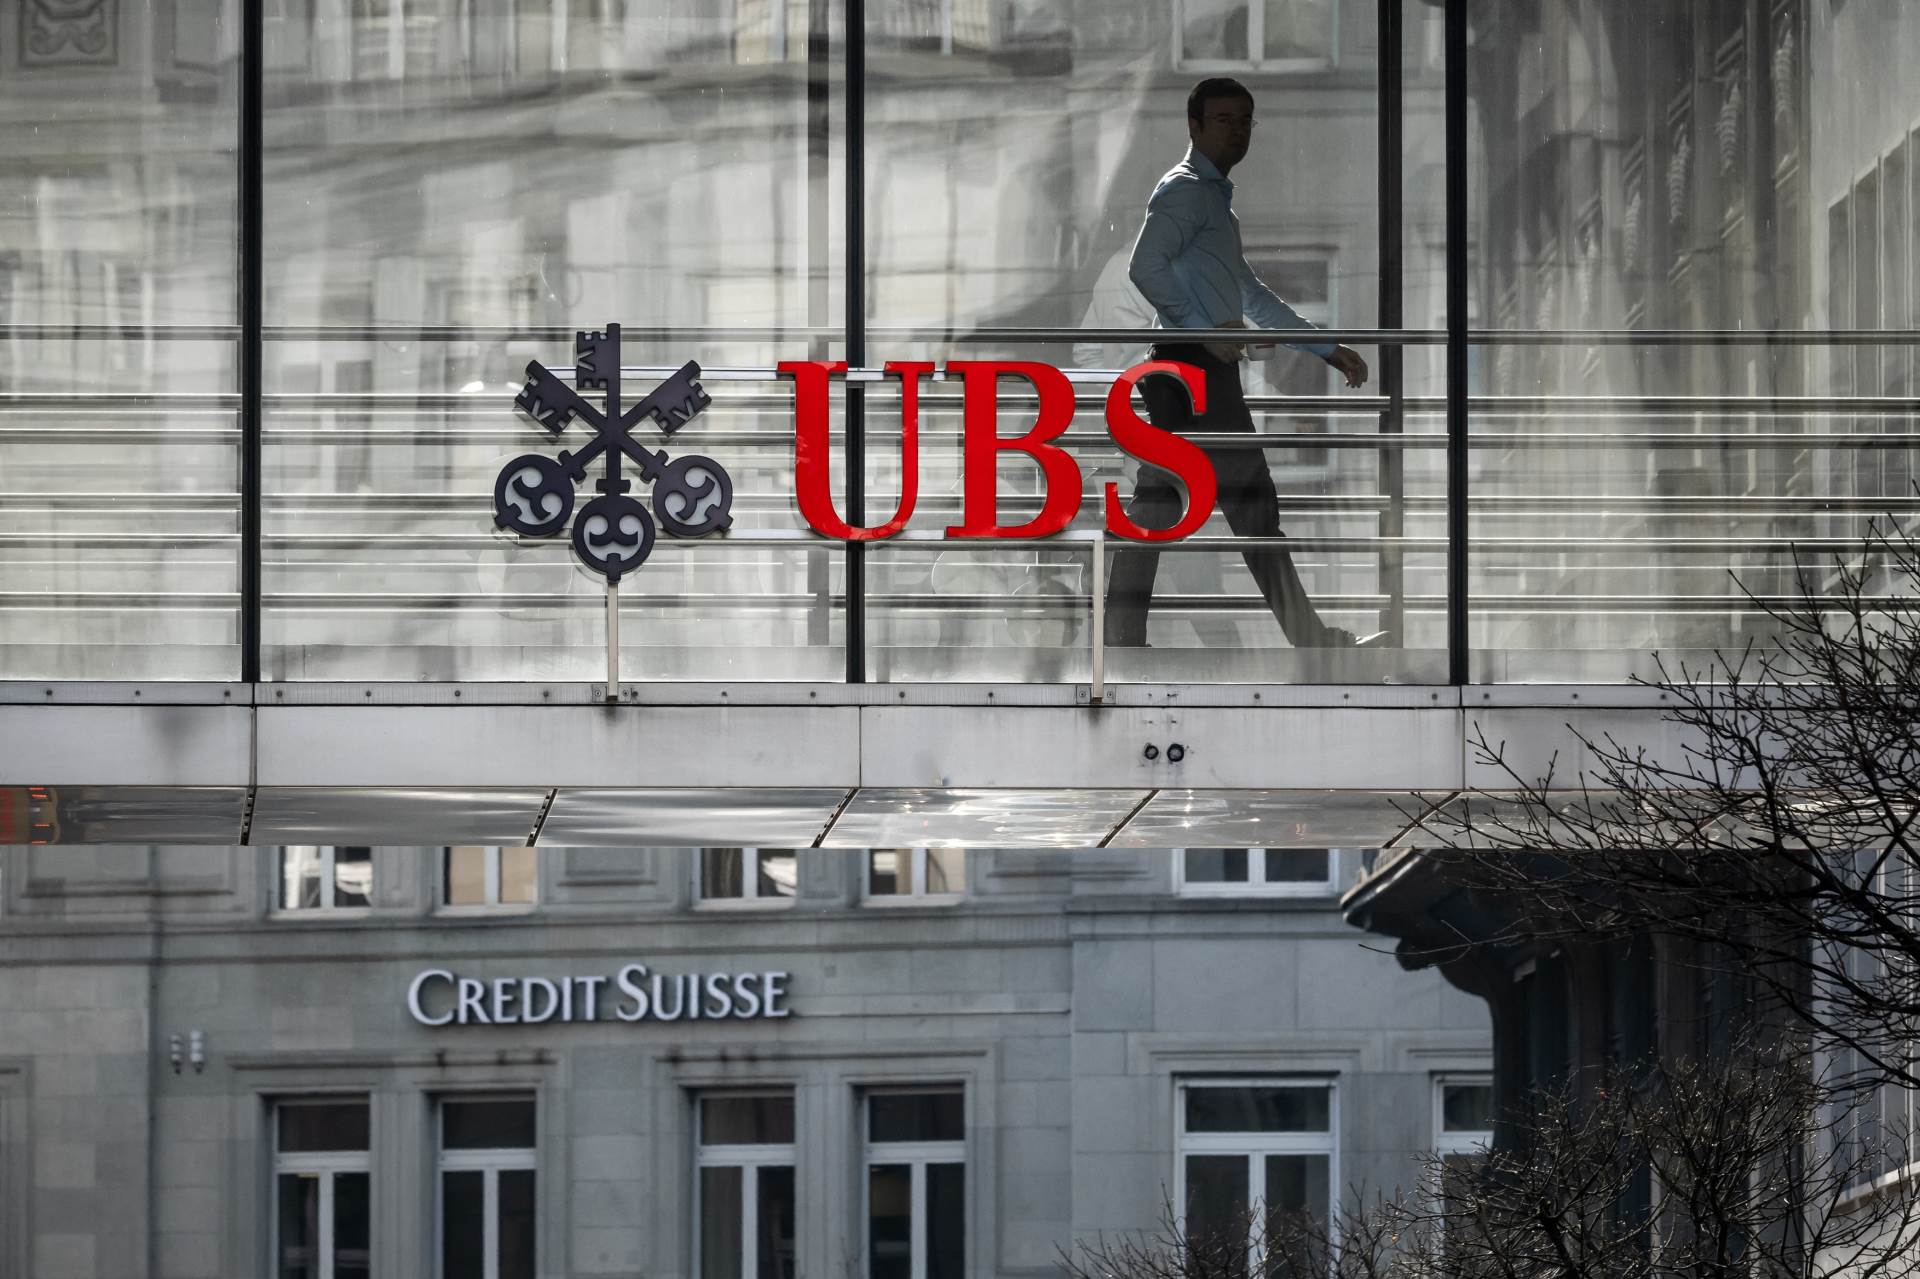  UBS i Credit Suisse 